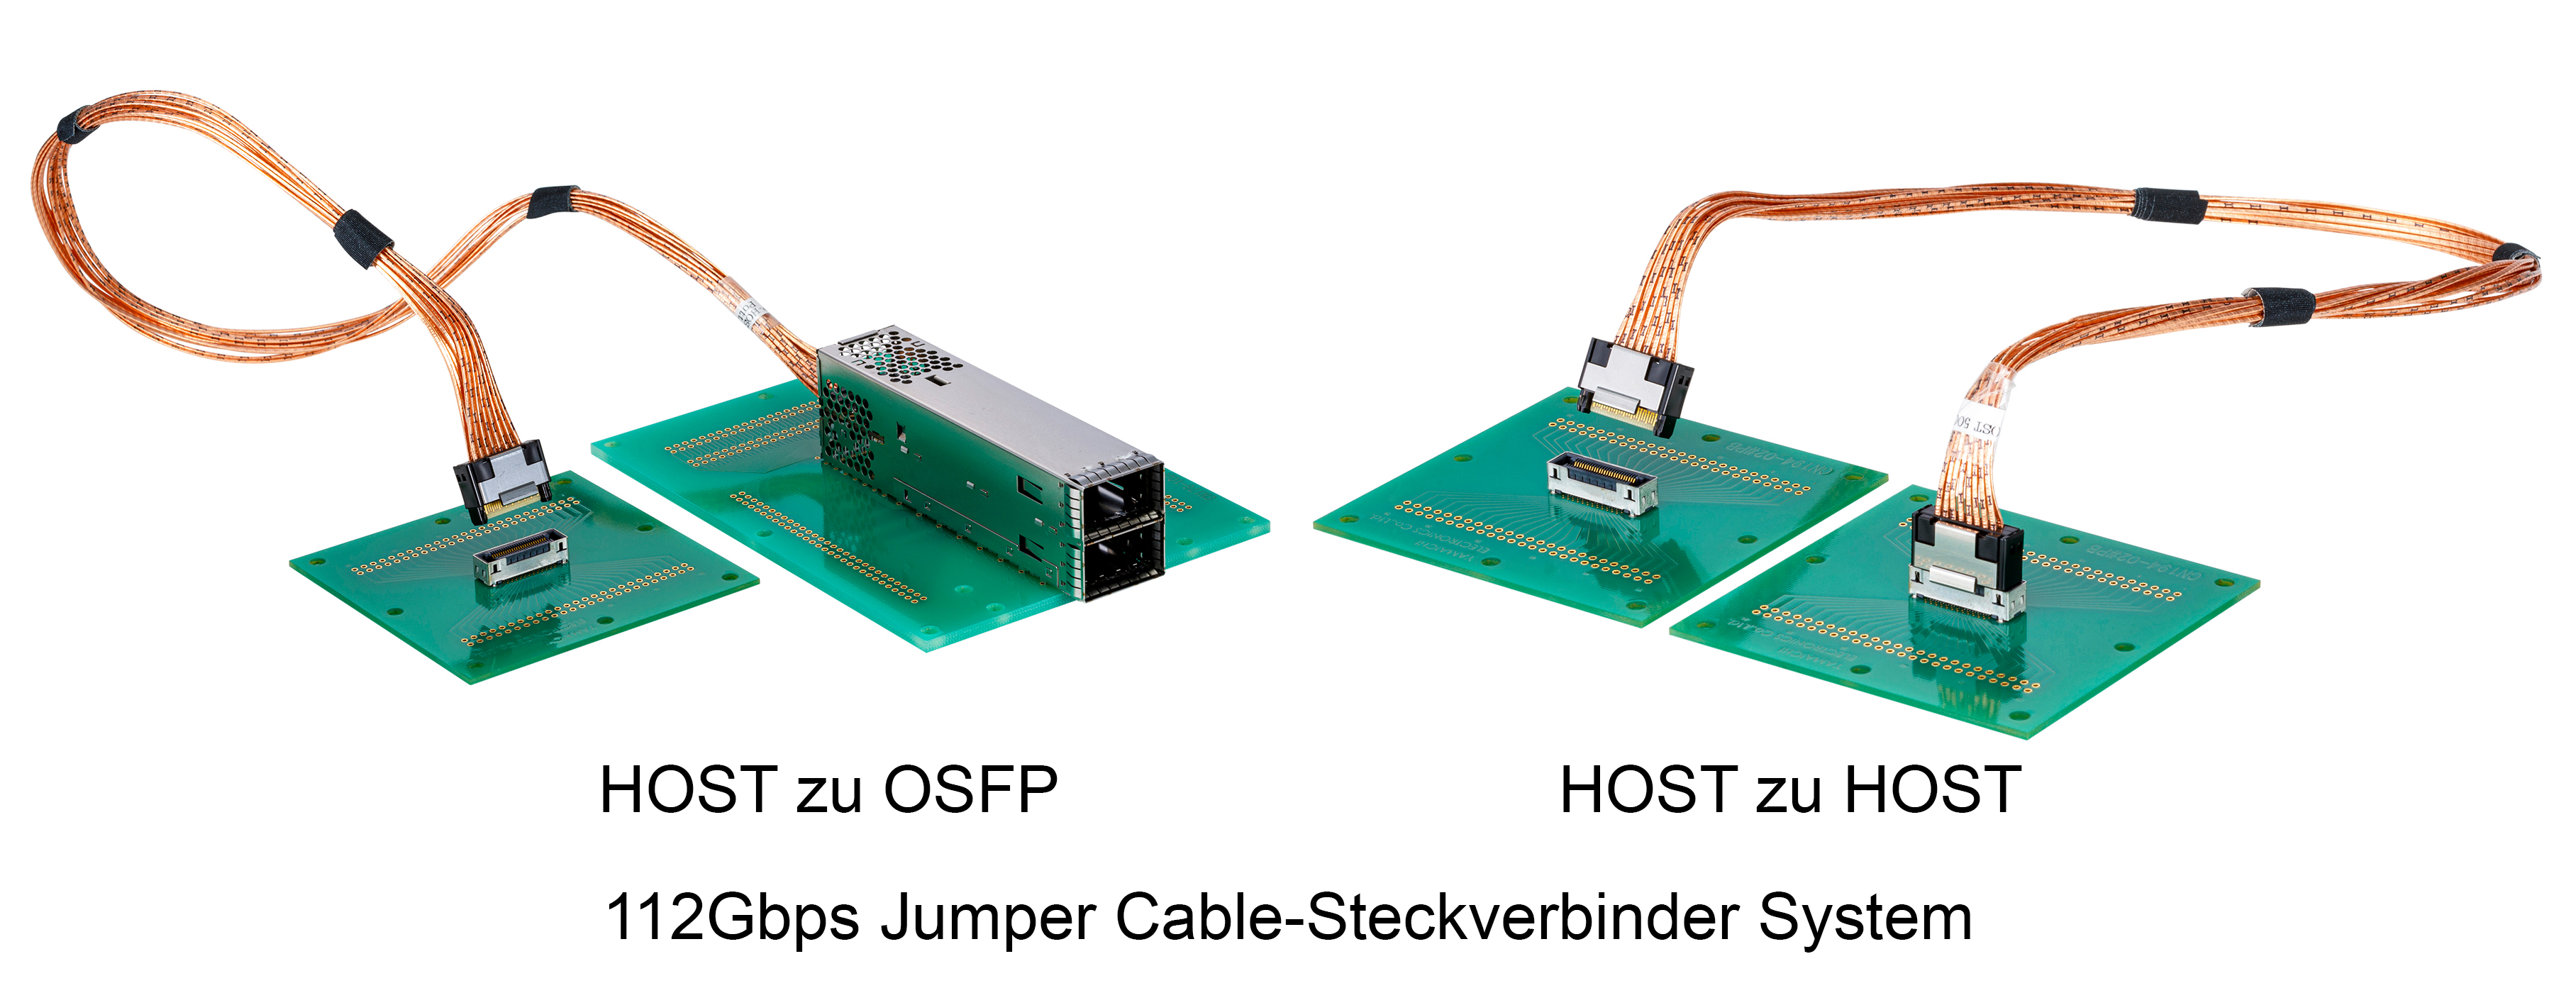 Jumper Cable-Steckverbinder System